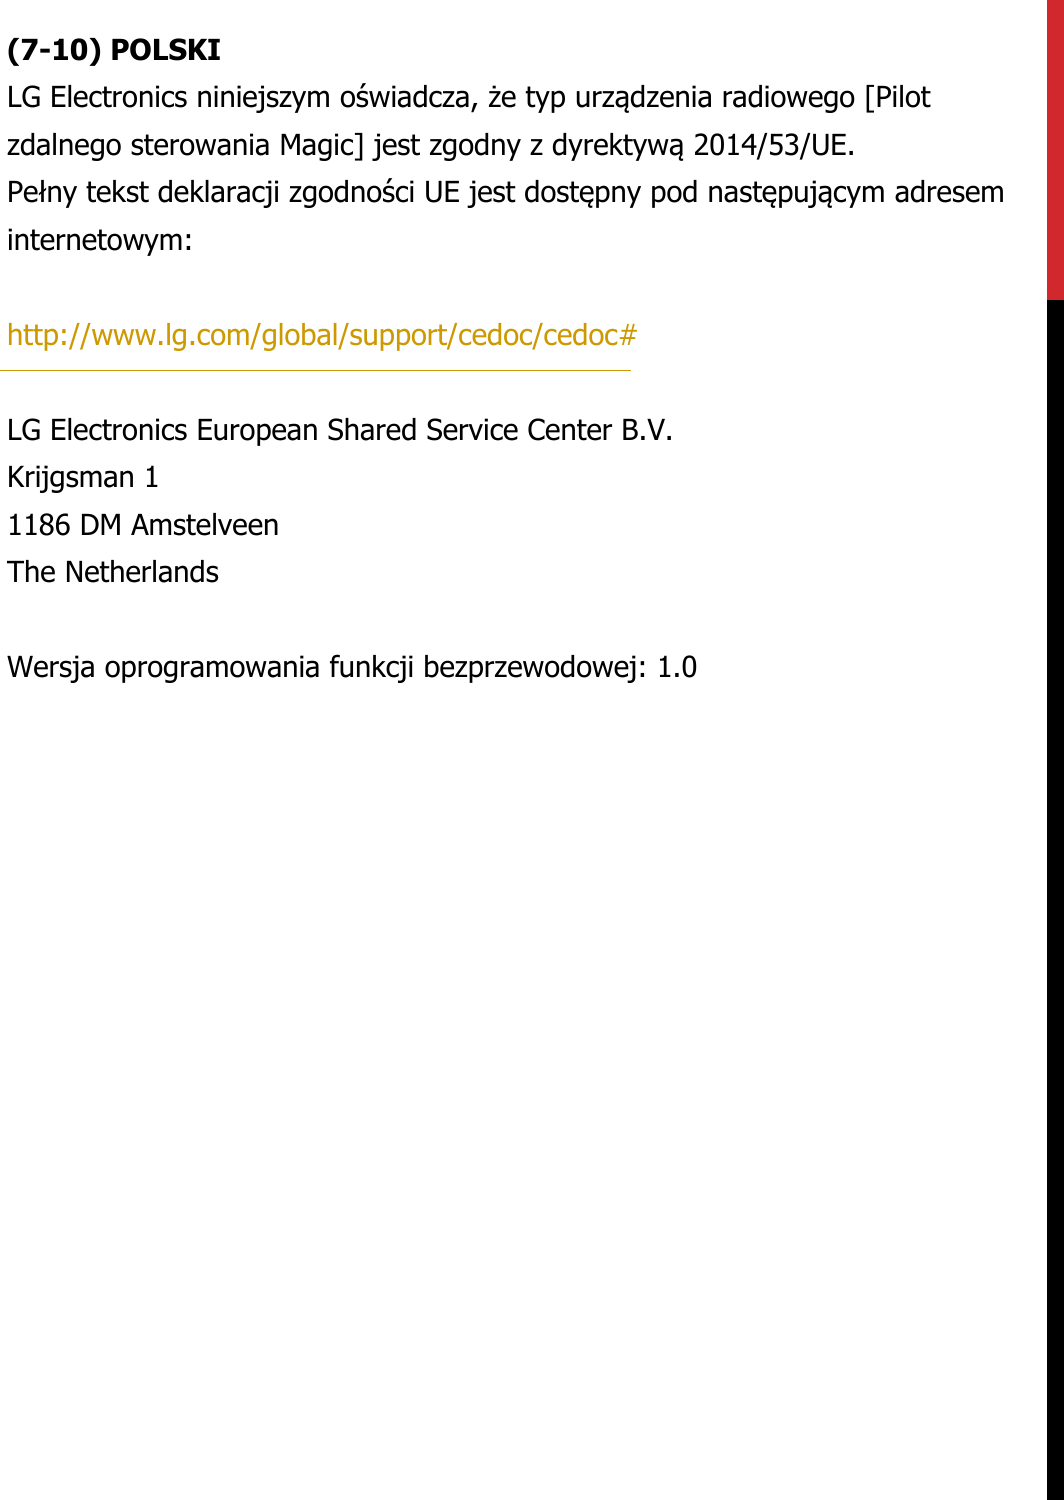 (7-10) POLSKILG Electronics niniejszym oświadcza, że typ urządzenia radiowego [Pilot zdalnego sterowania Magic] jest zgodny z dyrektywą 2014/53/UE. Pełny tekst deklaracji zgodności UE jest dostępny pod następującym adresem internetowym:   http://www.lg.com/global/support/cedoc/cedoc#   LG Electronics European Shared Service Center B.V.  Krijgsman 1  1186 DM Amstelveen  The Netherlands   Wersja oprogramowania funkcji bezprzewodowej: 1.0